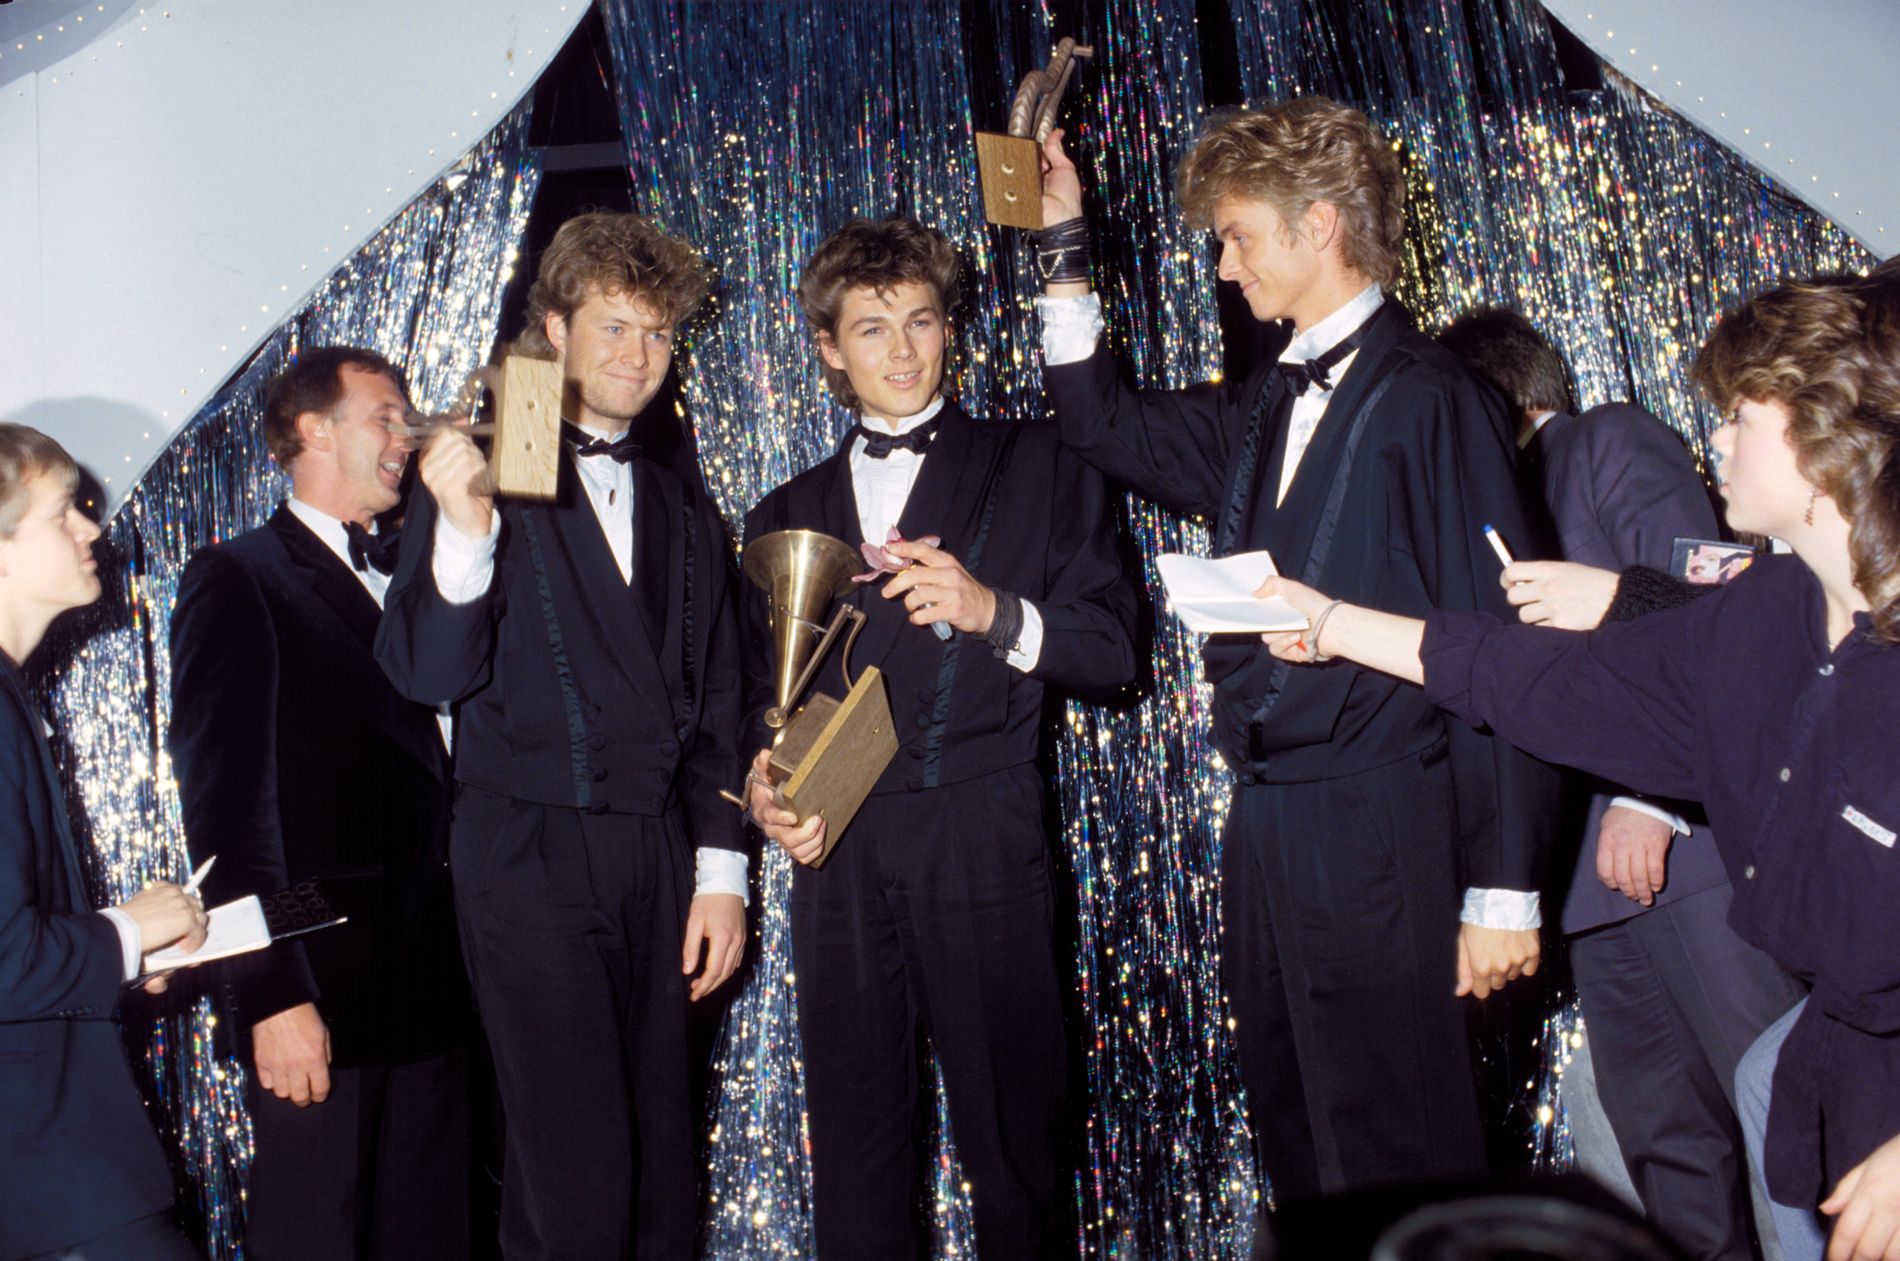 Utdeling av Spellemannprisen for året 1985. Vinnerne av pop-prisen og årets spillemann ble tildelt gruppen A-HA. Magne Furuholmen, Morten Harket, Paul Waaktaar Savoy.